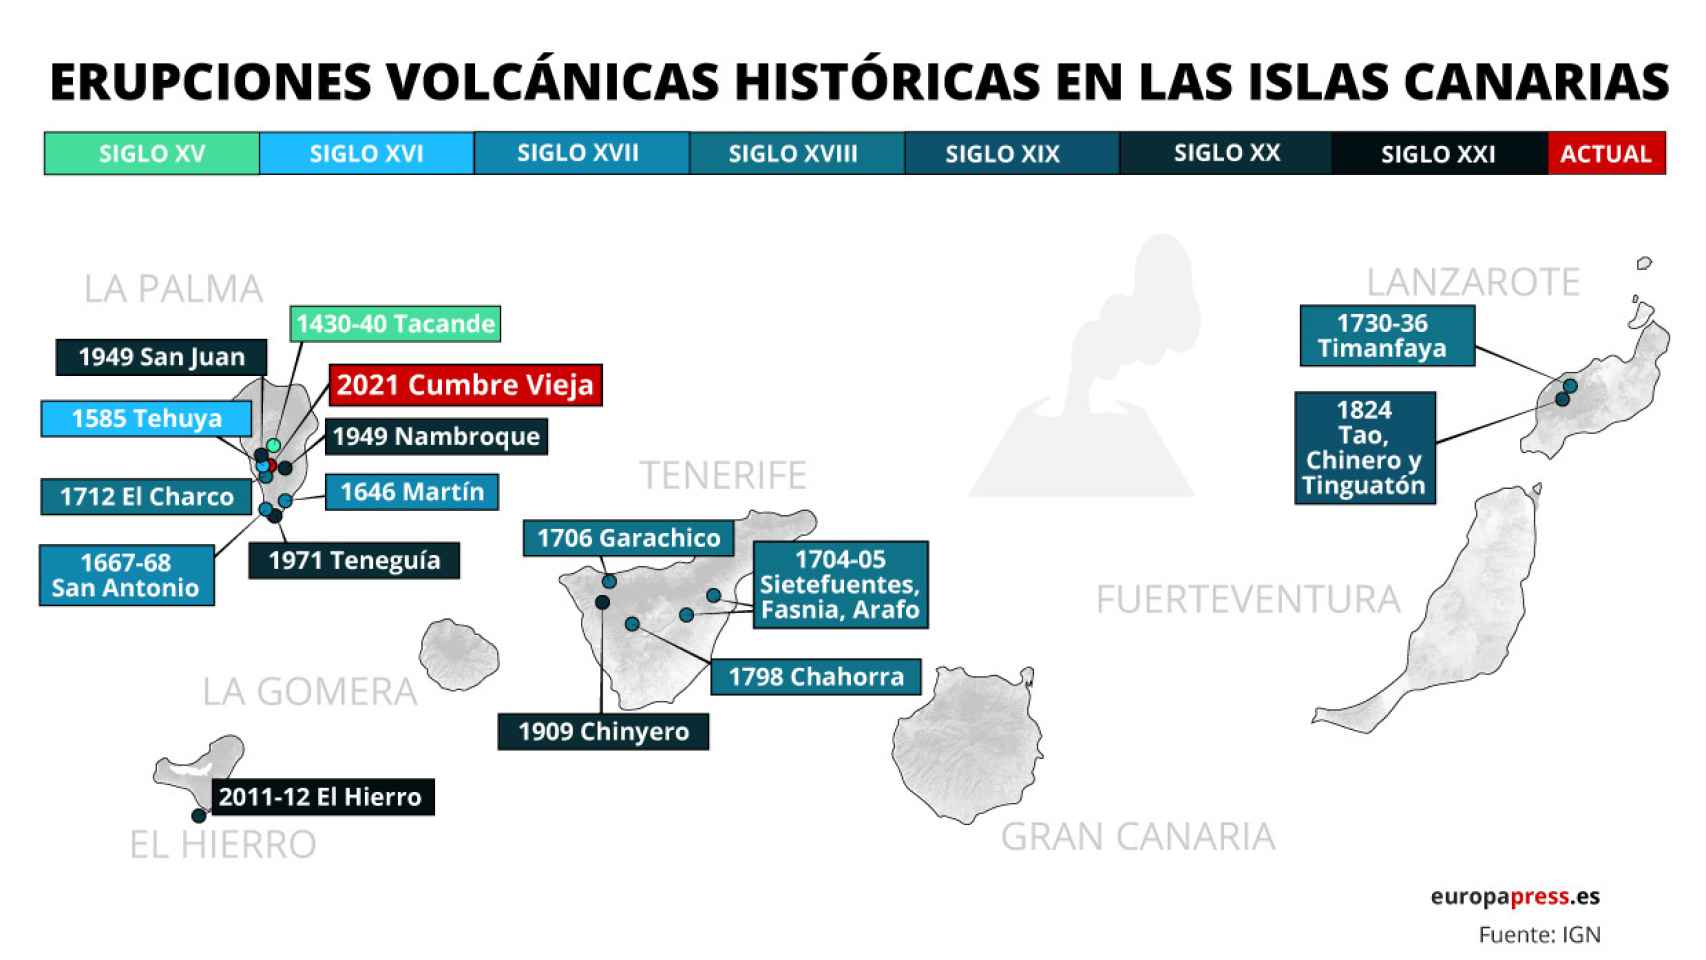 Erupciones volcánicas históricas en las Islas Canarias.